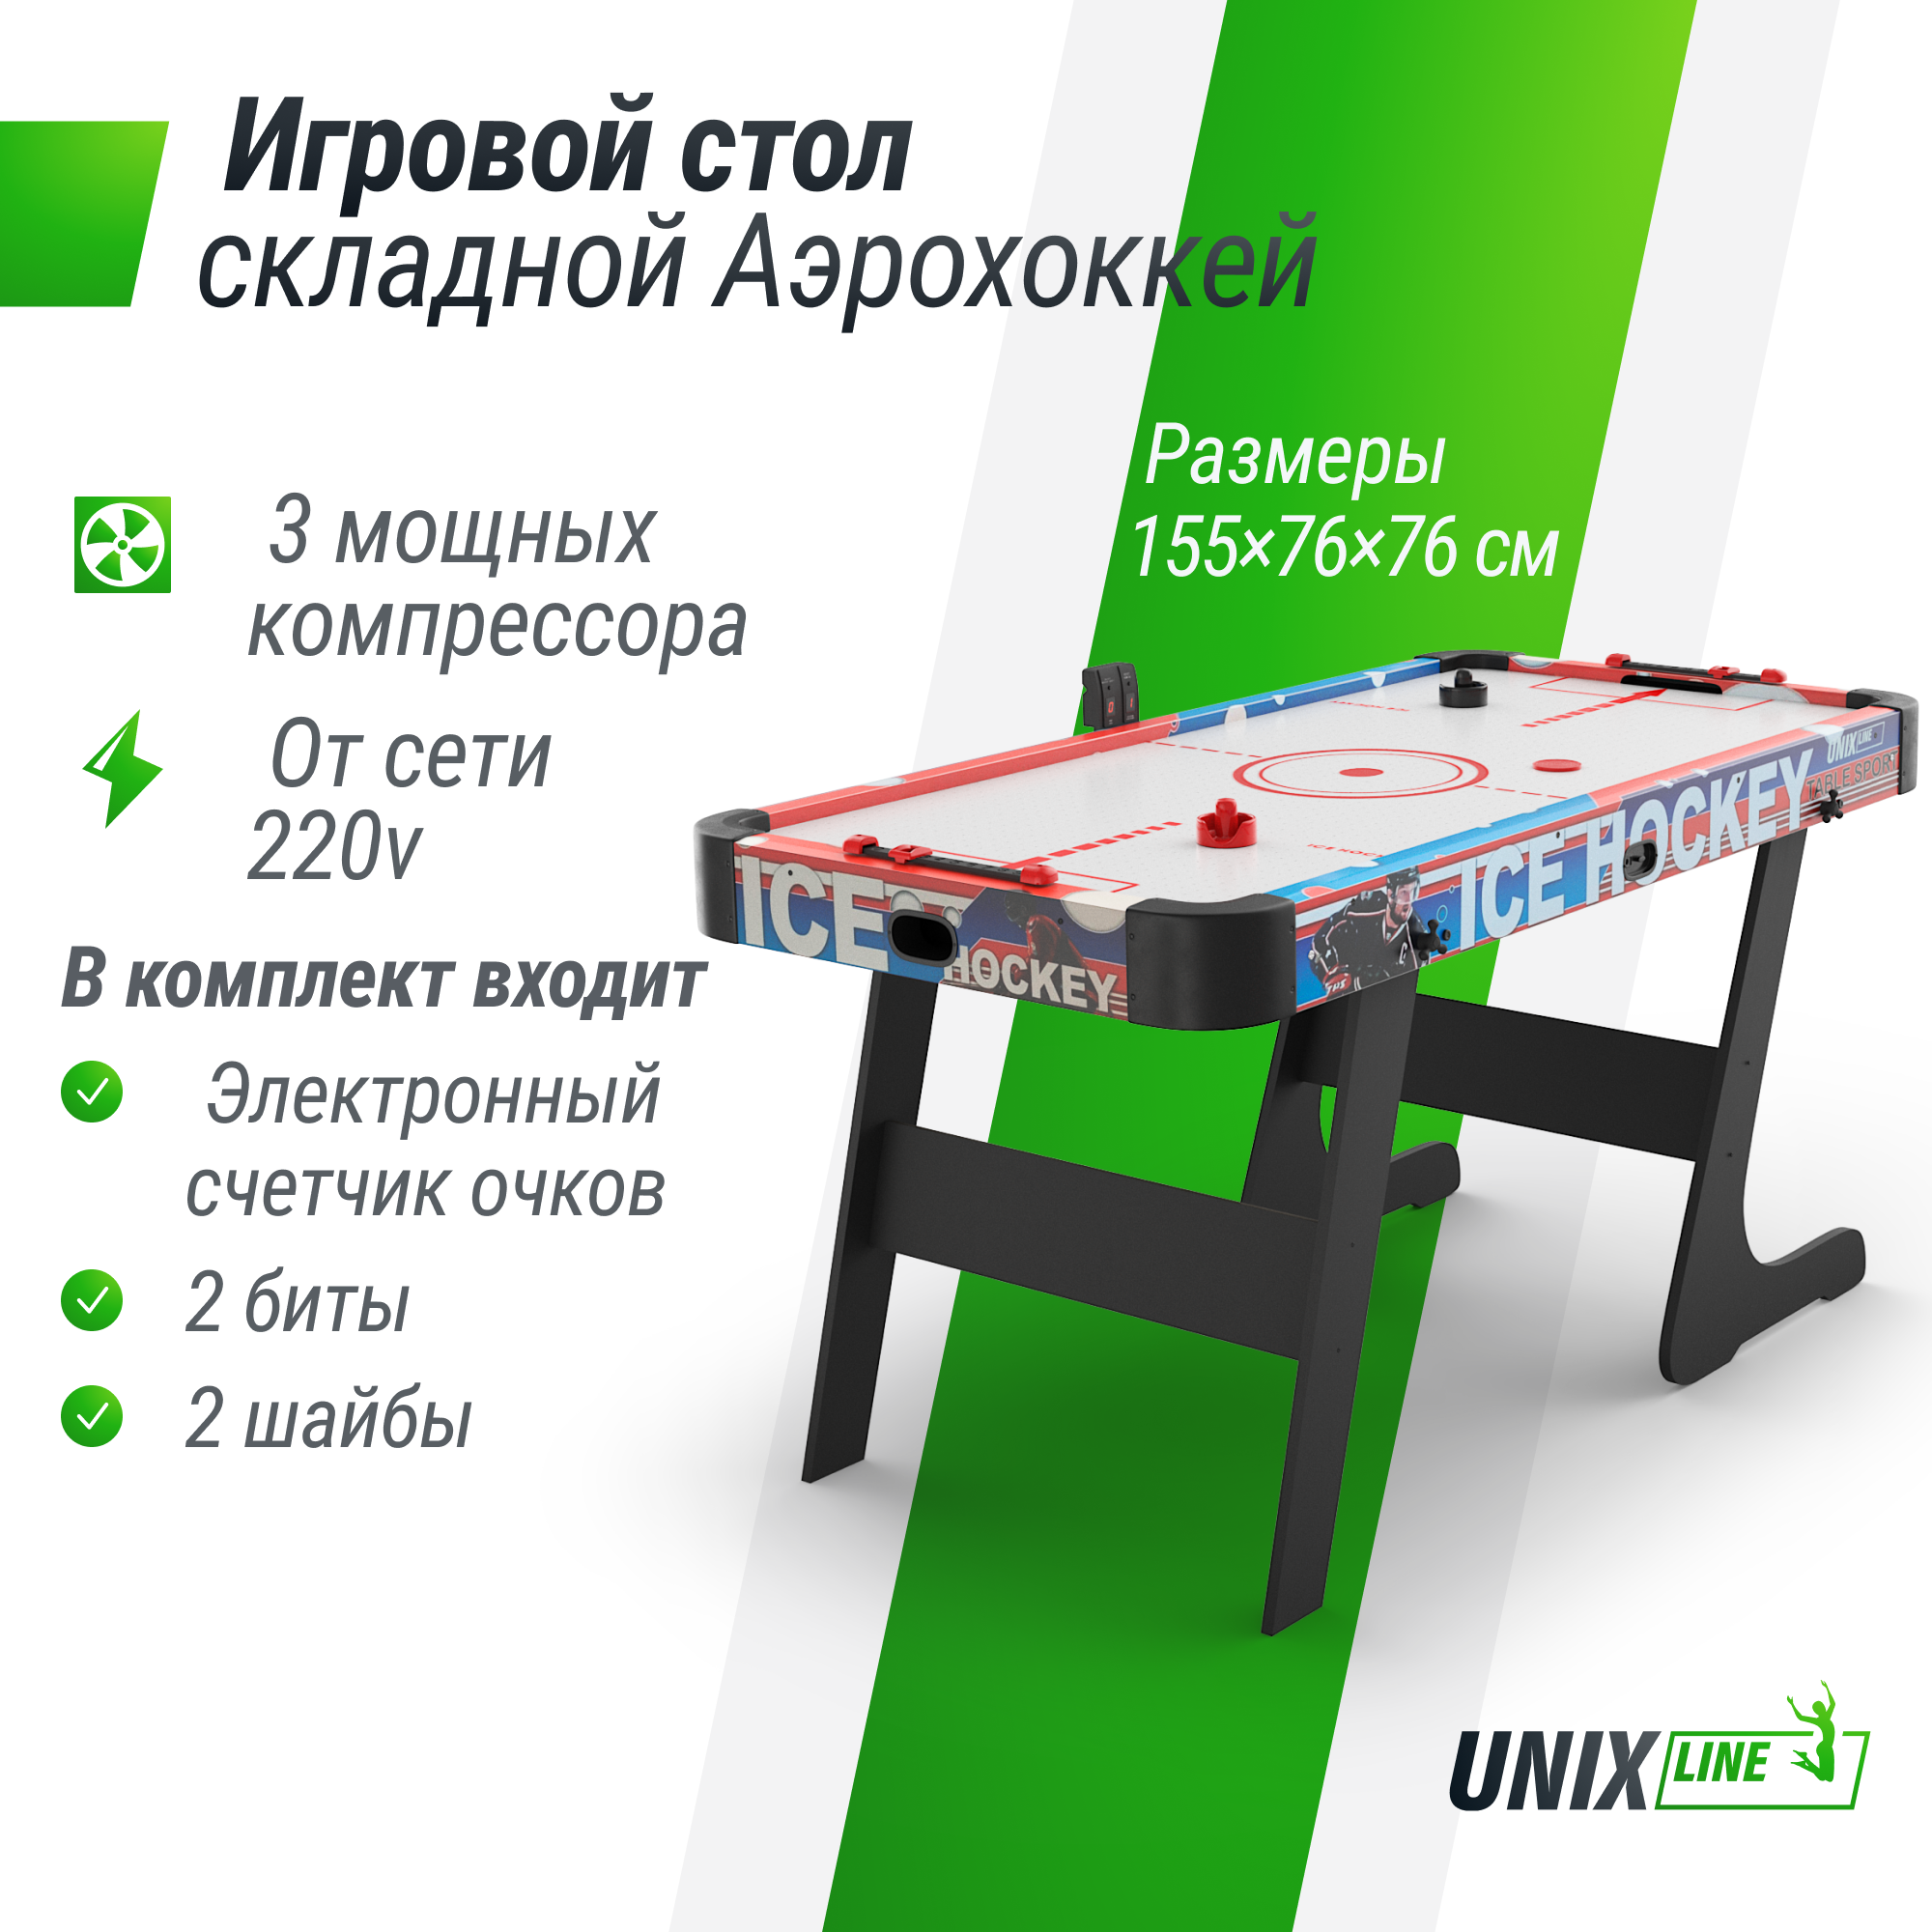 Игровой стол UNIX Line Аэрохоккей 155х76 cм, складной большой аэро хоккей от сети 220В стол складной со скамейками в чемодане td 12